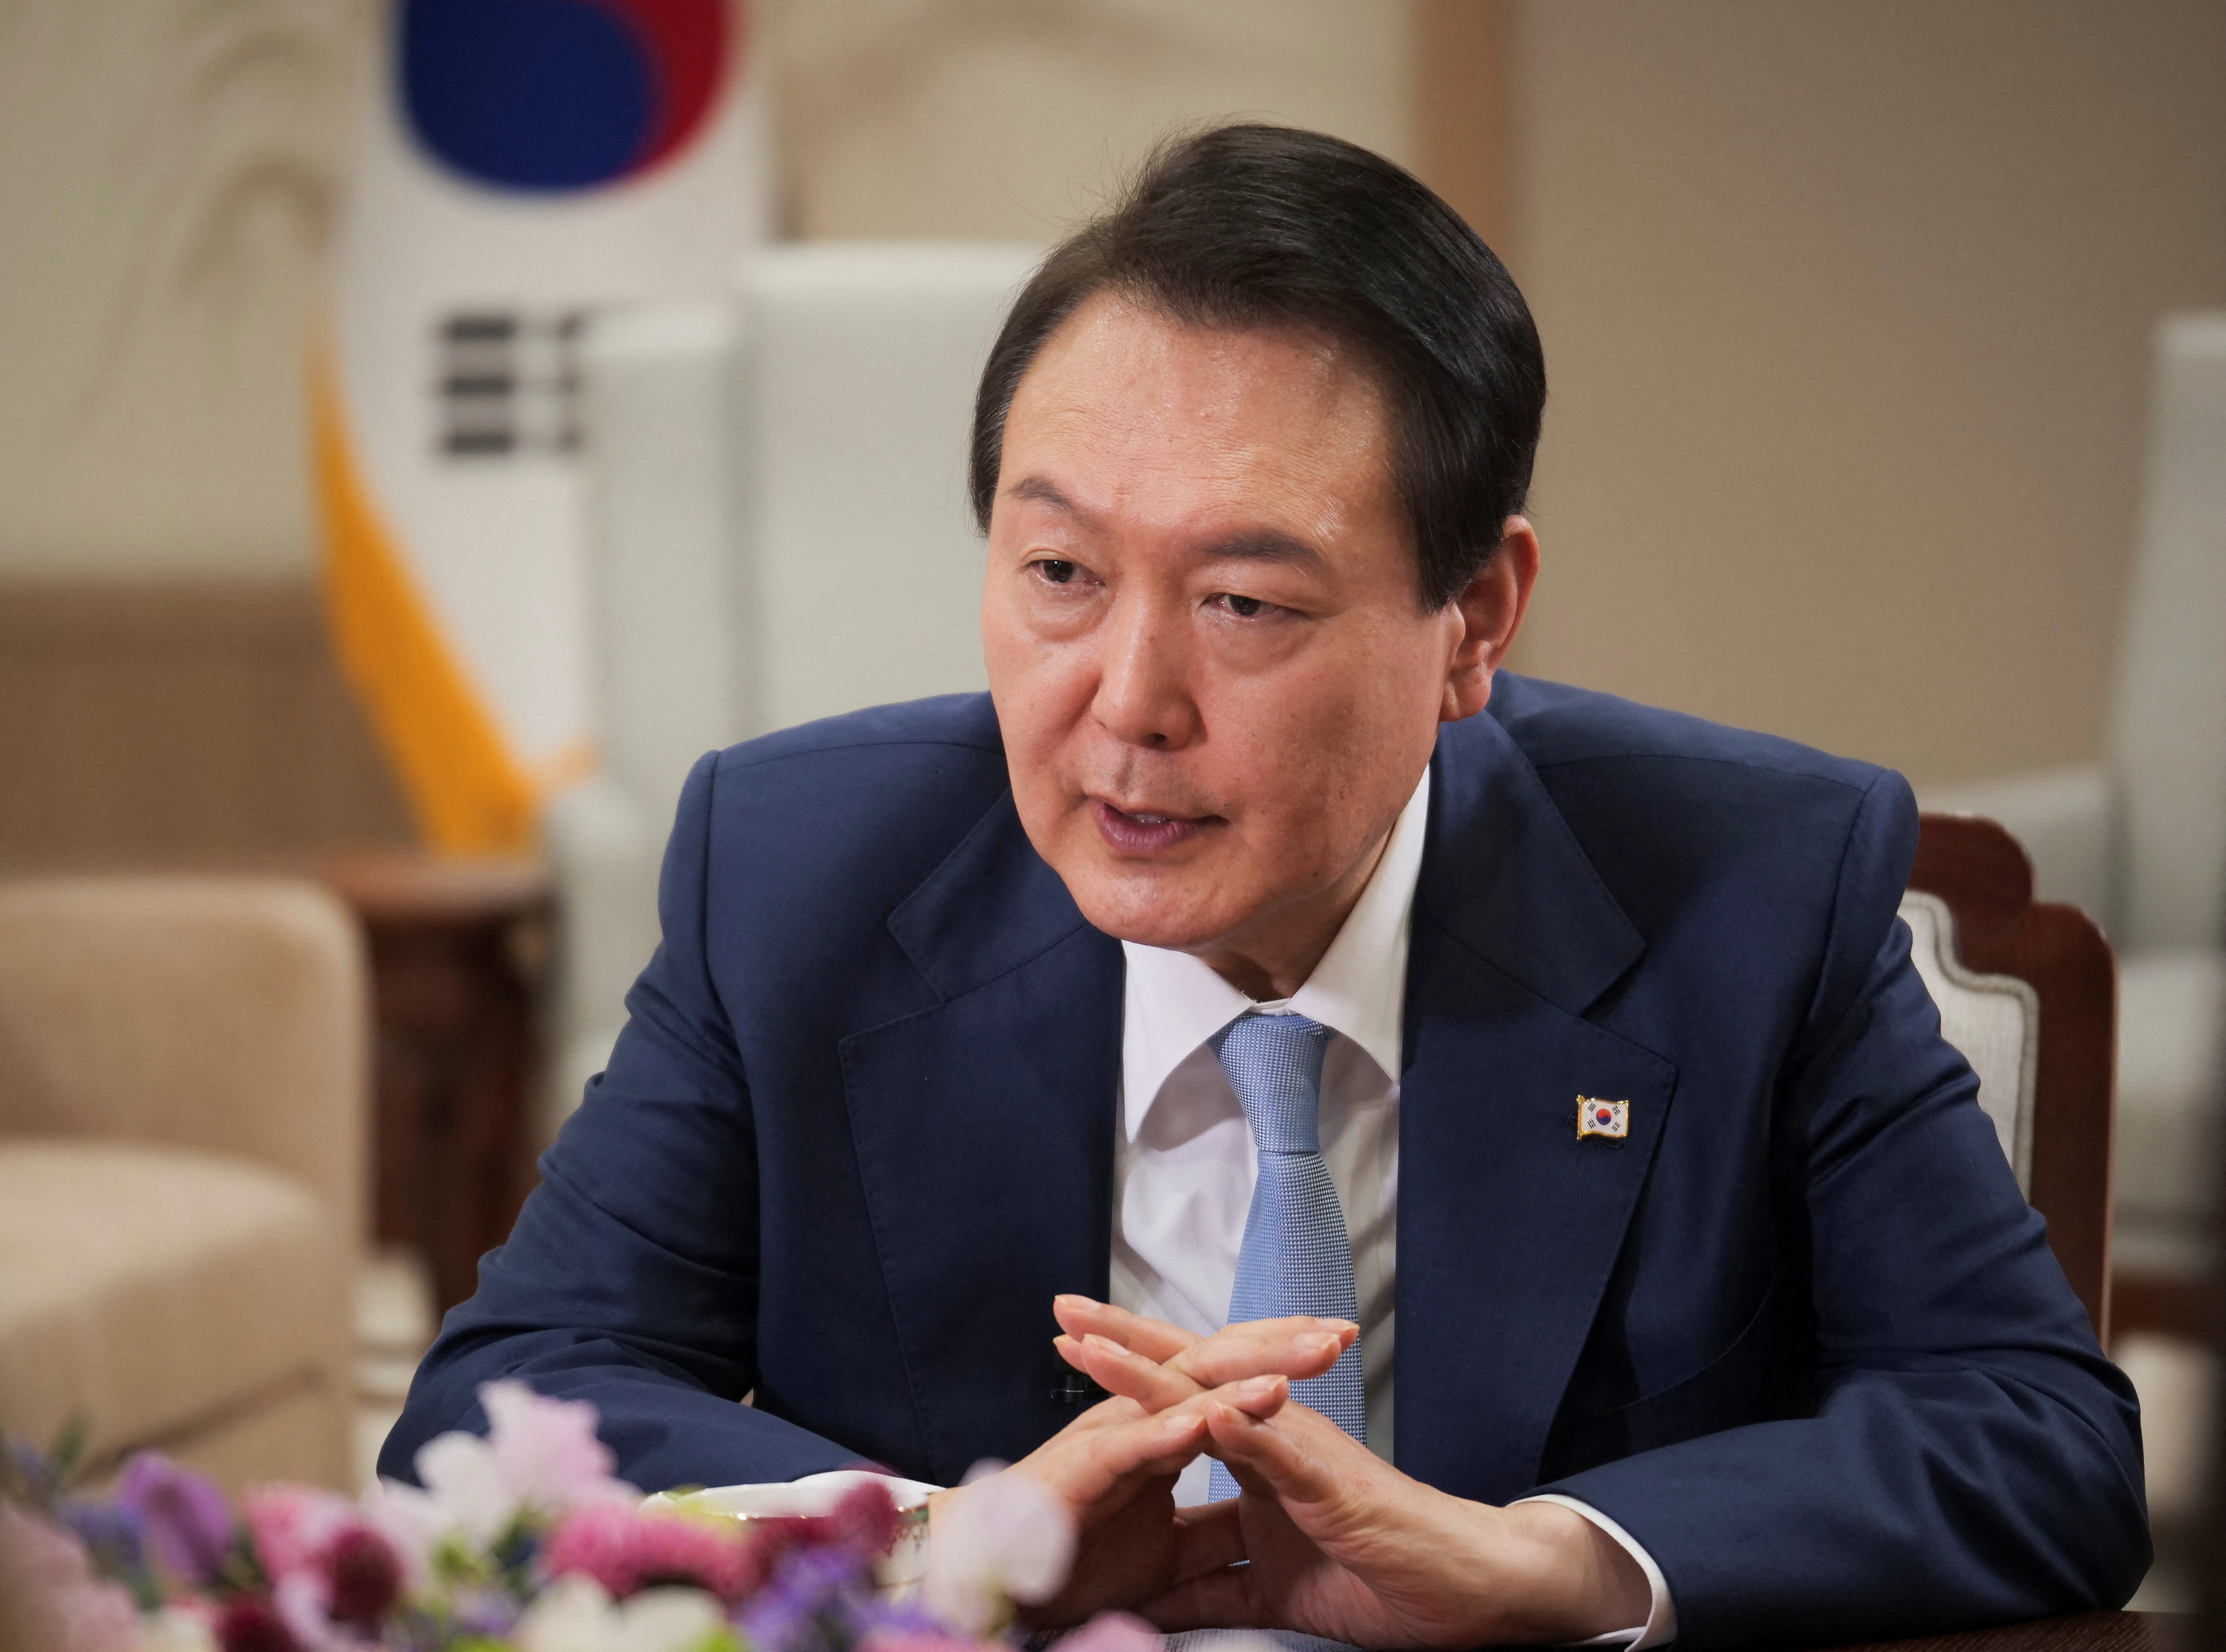 el presidente de Corea del Sur, Yoon Suk-yeol, advirtió de una respuesta conjunta sin precedentes con sus aliados si Corea del Norte sigue adelante con un ensayo nuclear, e instó a China a que ayude a disuadir a Pyongyang de seguir desarrollando armas nucleares y misiles prohibidos. (REUTERS)